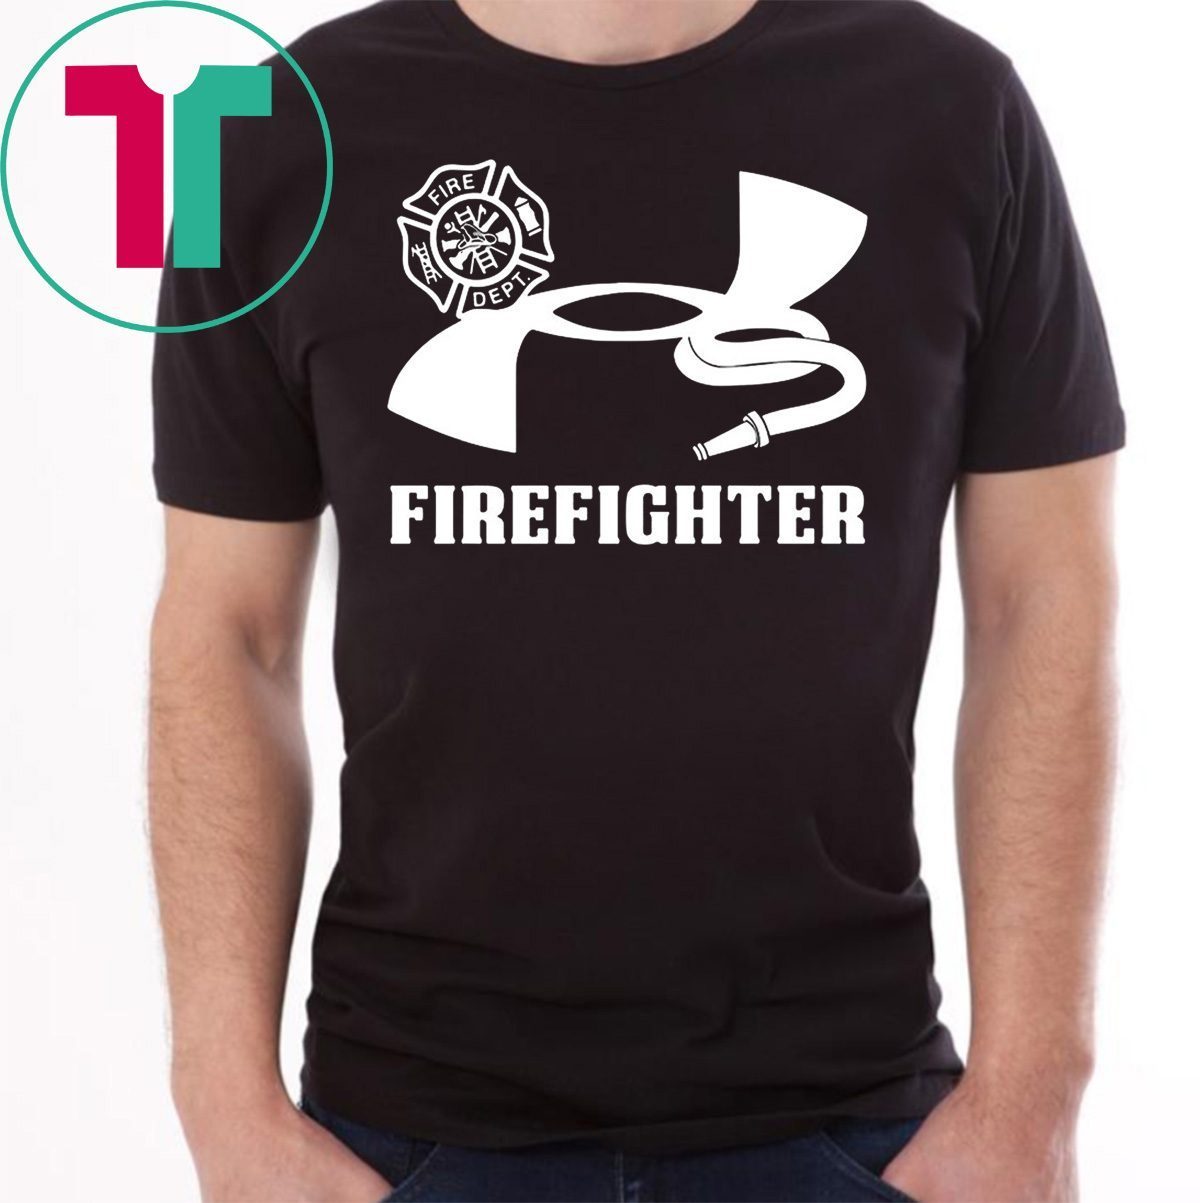 under armour firefighter t shirt